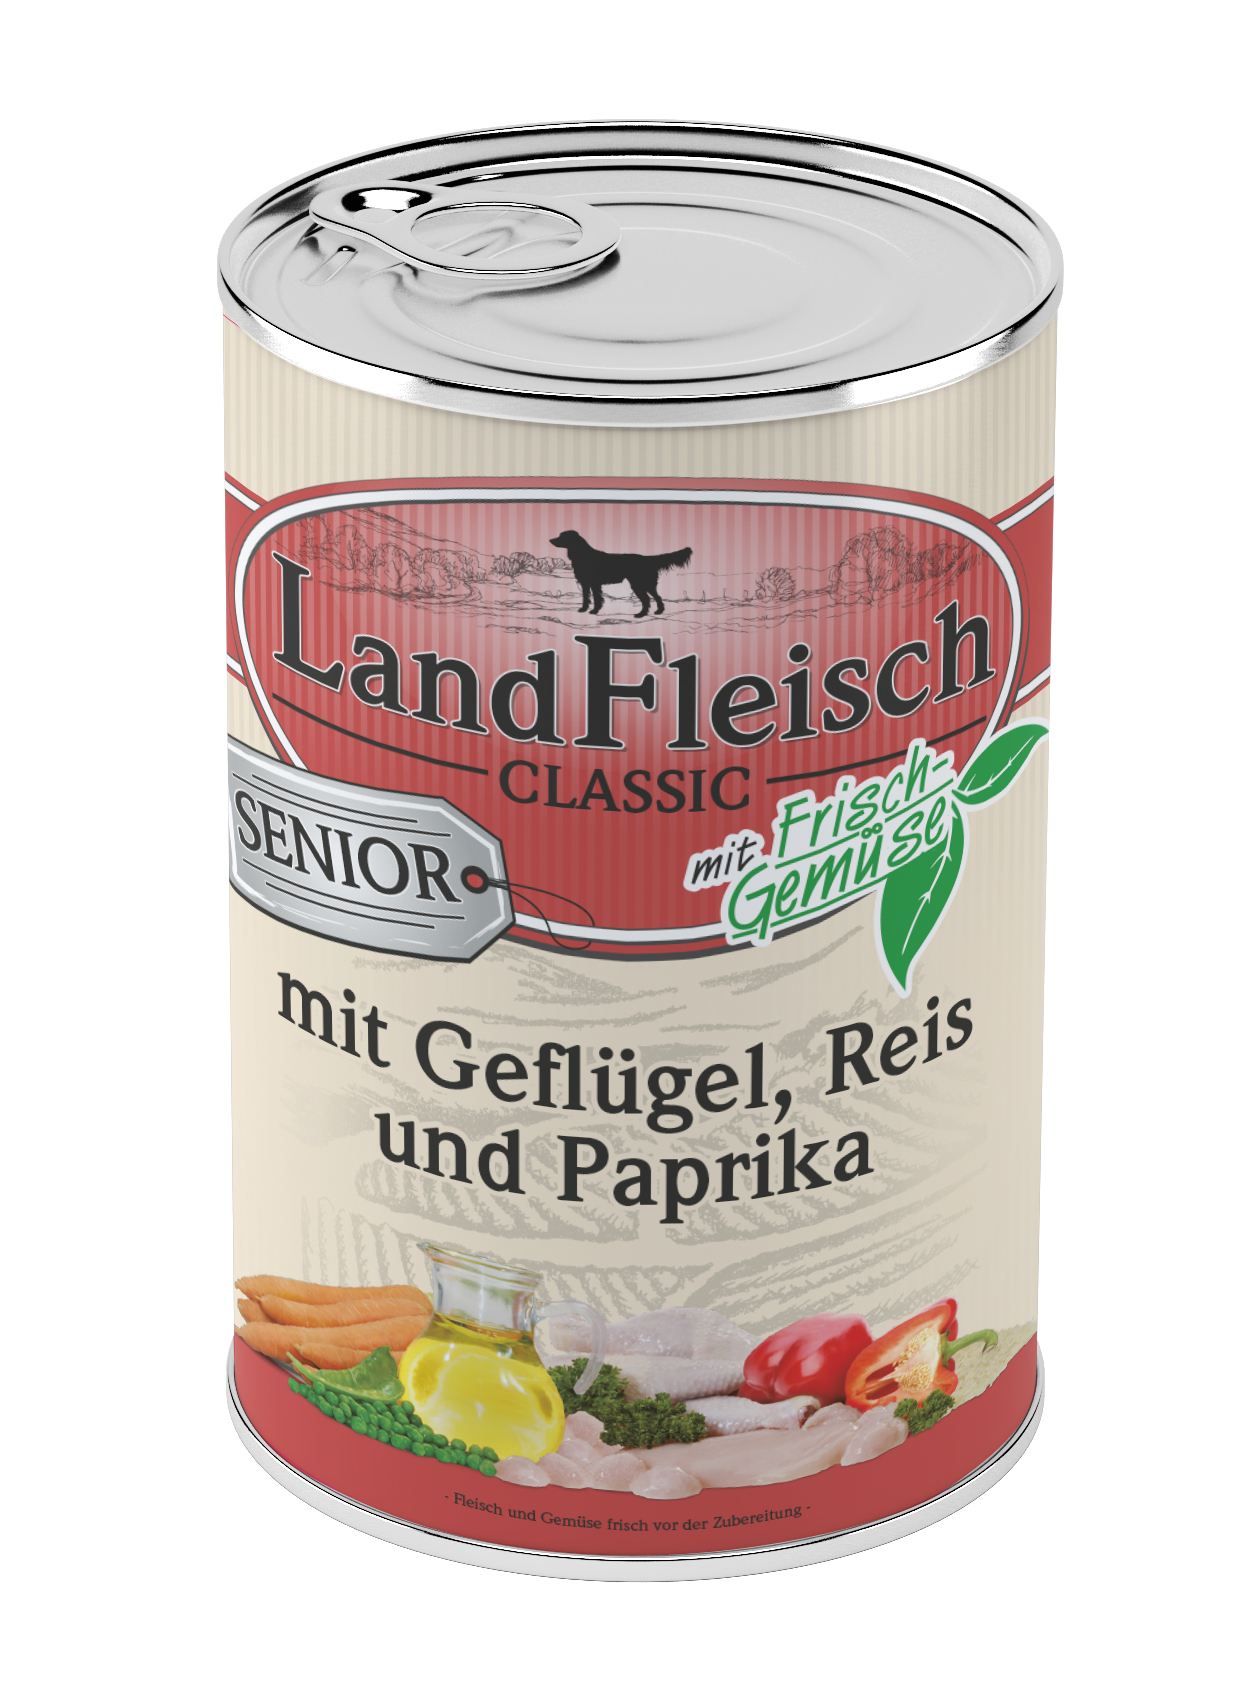 LandFleisch Classic Senior Geflügel & Reis & Paprika mit Frisc